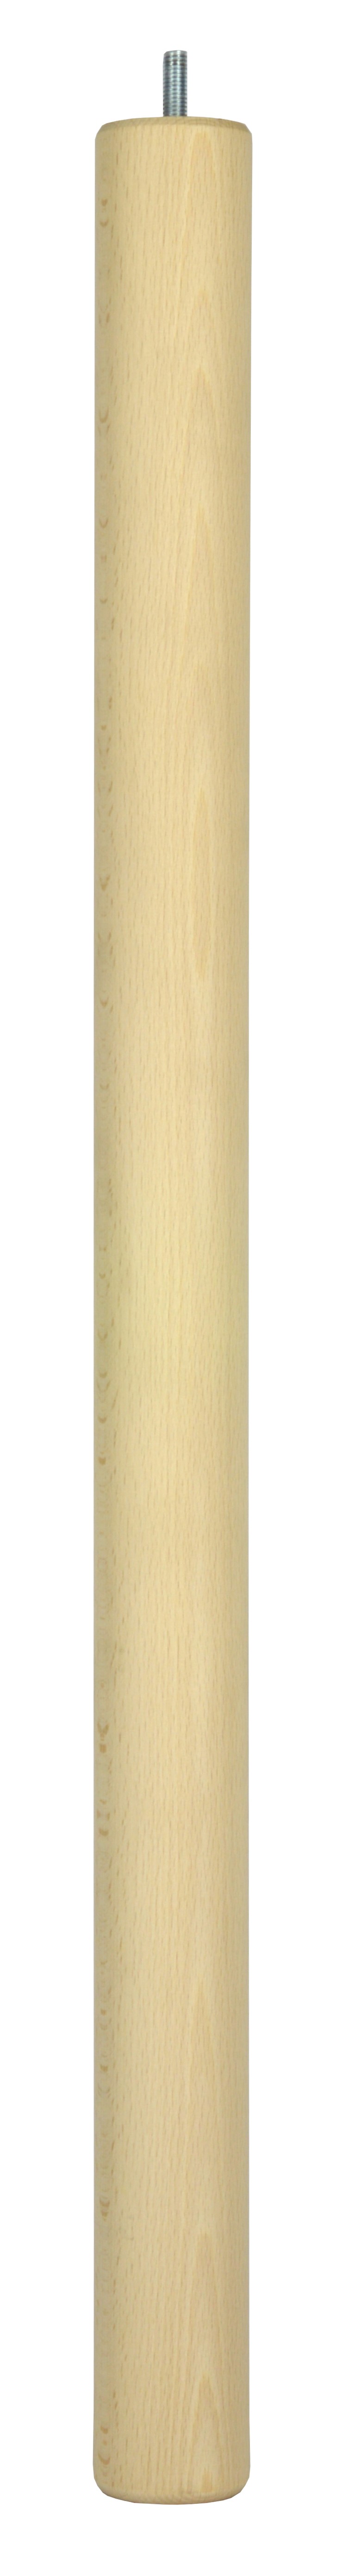 Pied de table haute cylindrique fixe hêtre brut Ø50 mm H730 mm - CIME